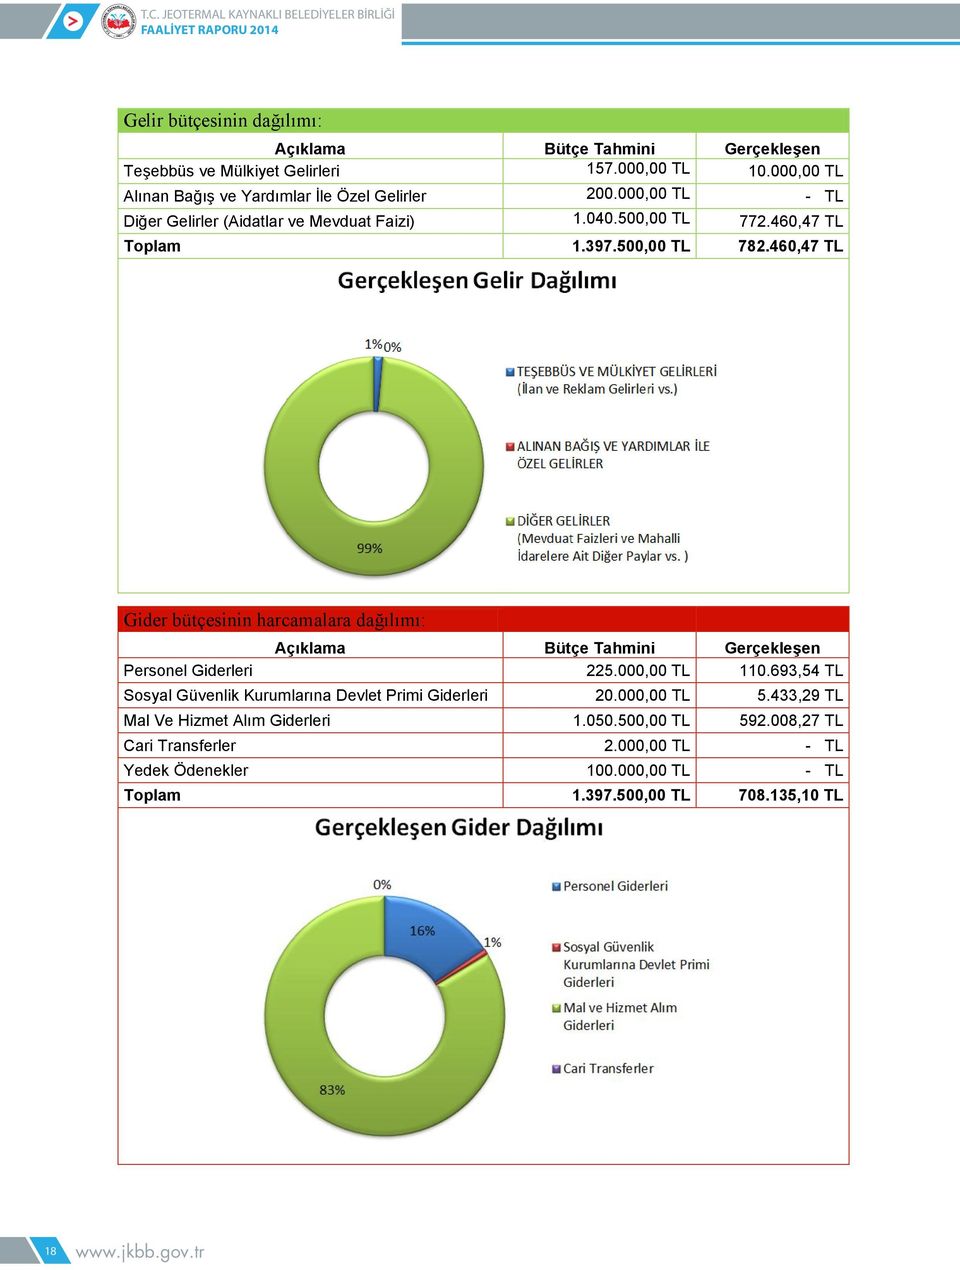 500,00 TL 782.460,47 TL Gider bütçesinin harcamalara dağılımı: Açıklama Bütçe Tahmini Gerçekleşen Personel Giderleri 225.000,00 TL 110.